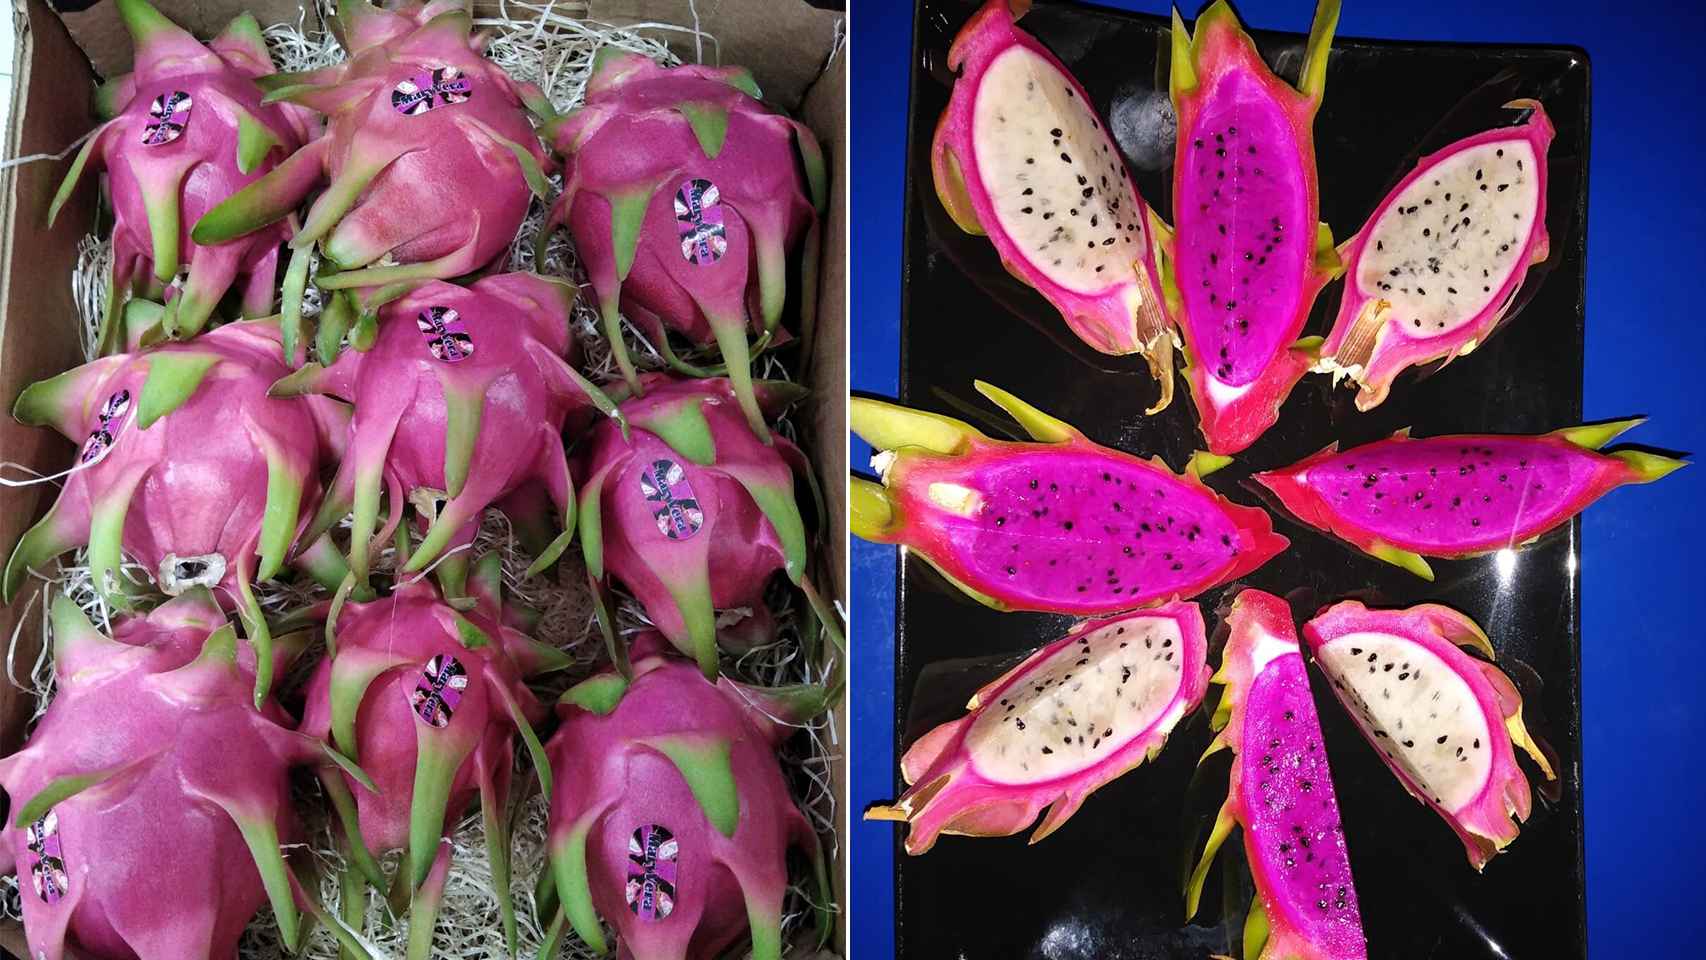 Cajas donde Miguel Ángel empaqueta los ejemplares de pitaya para sus clientes.